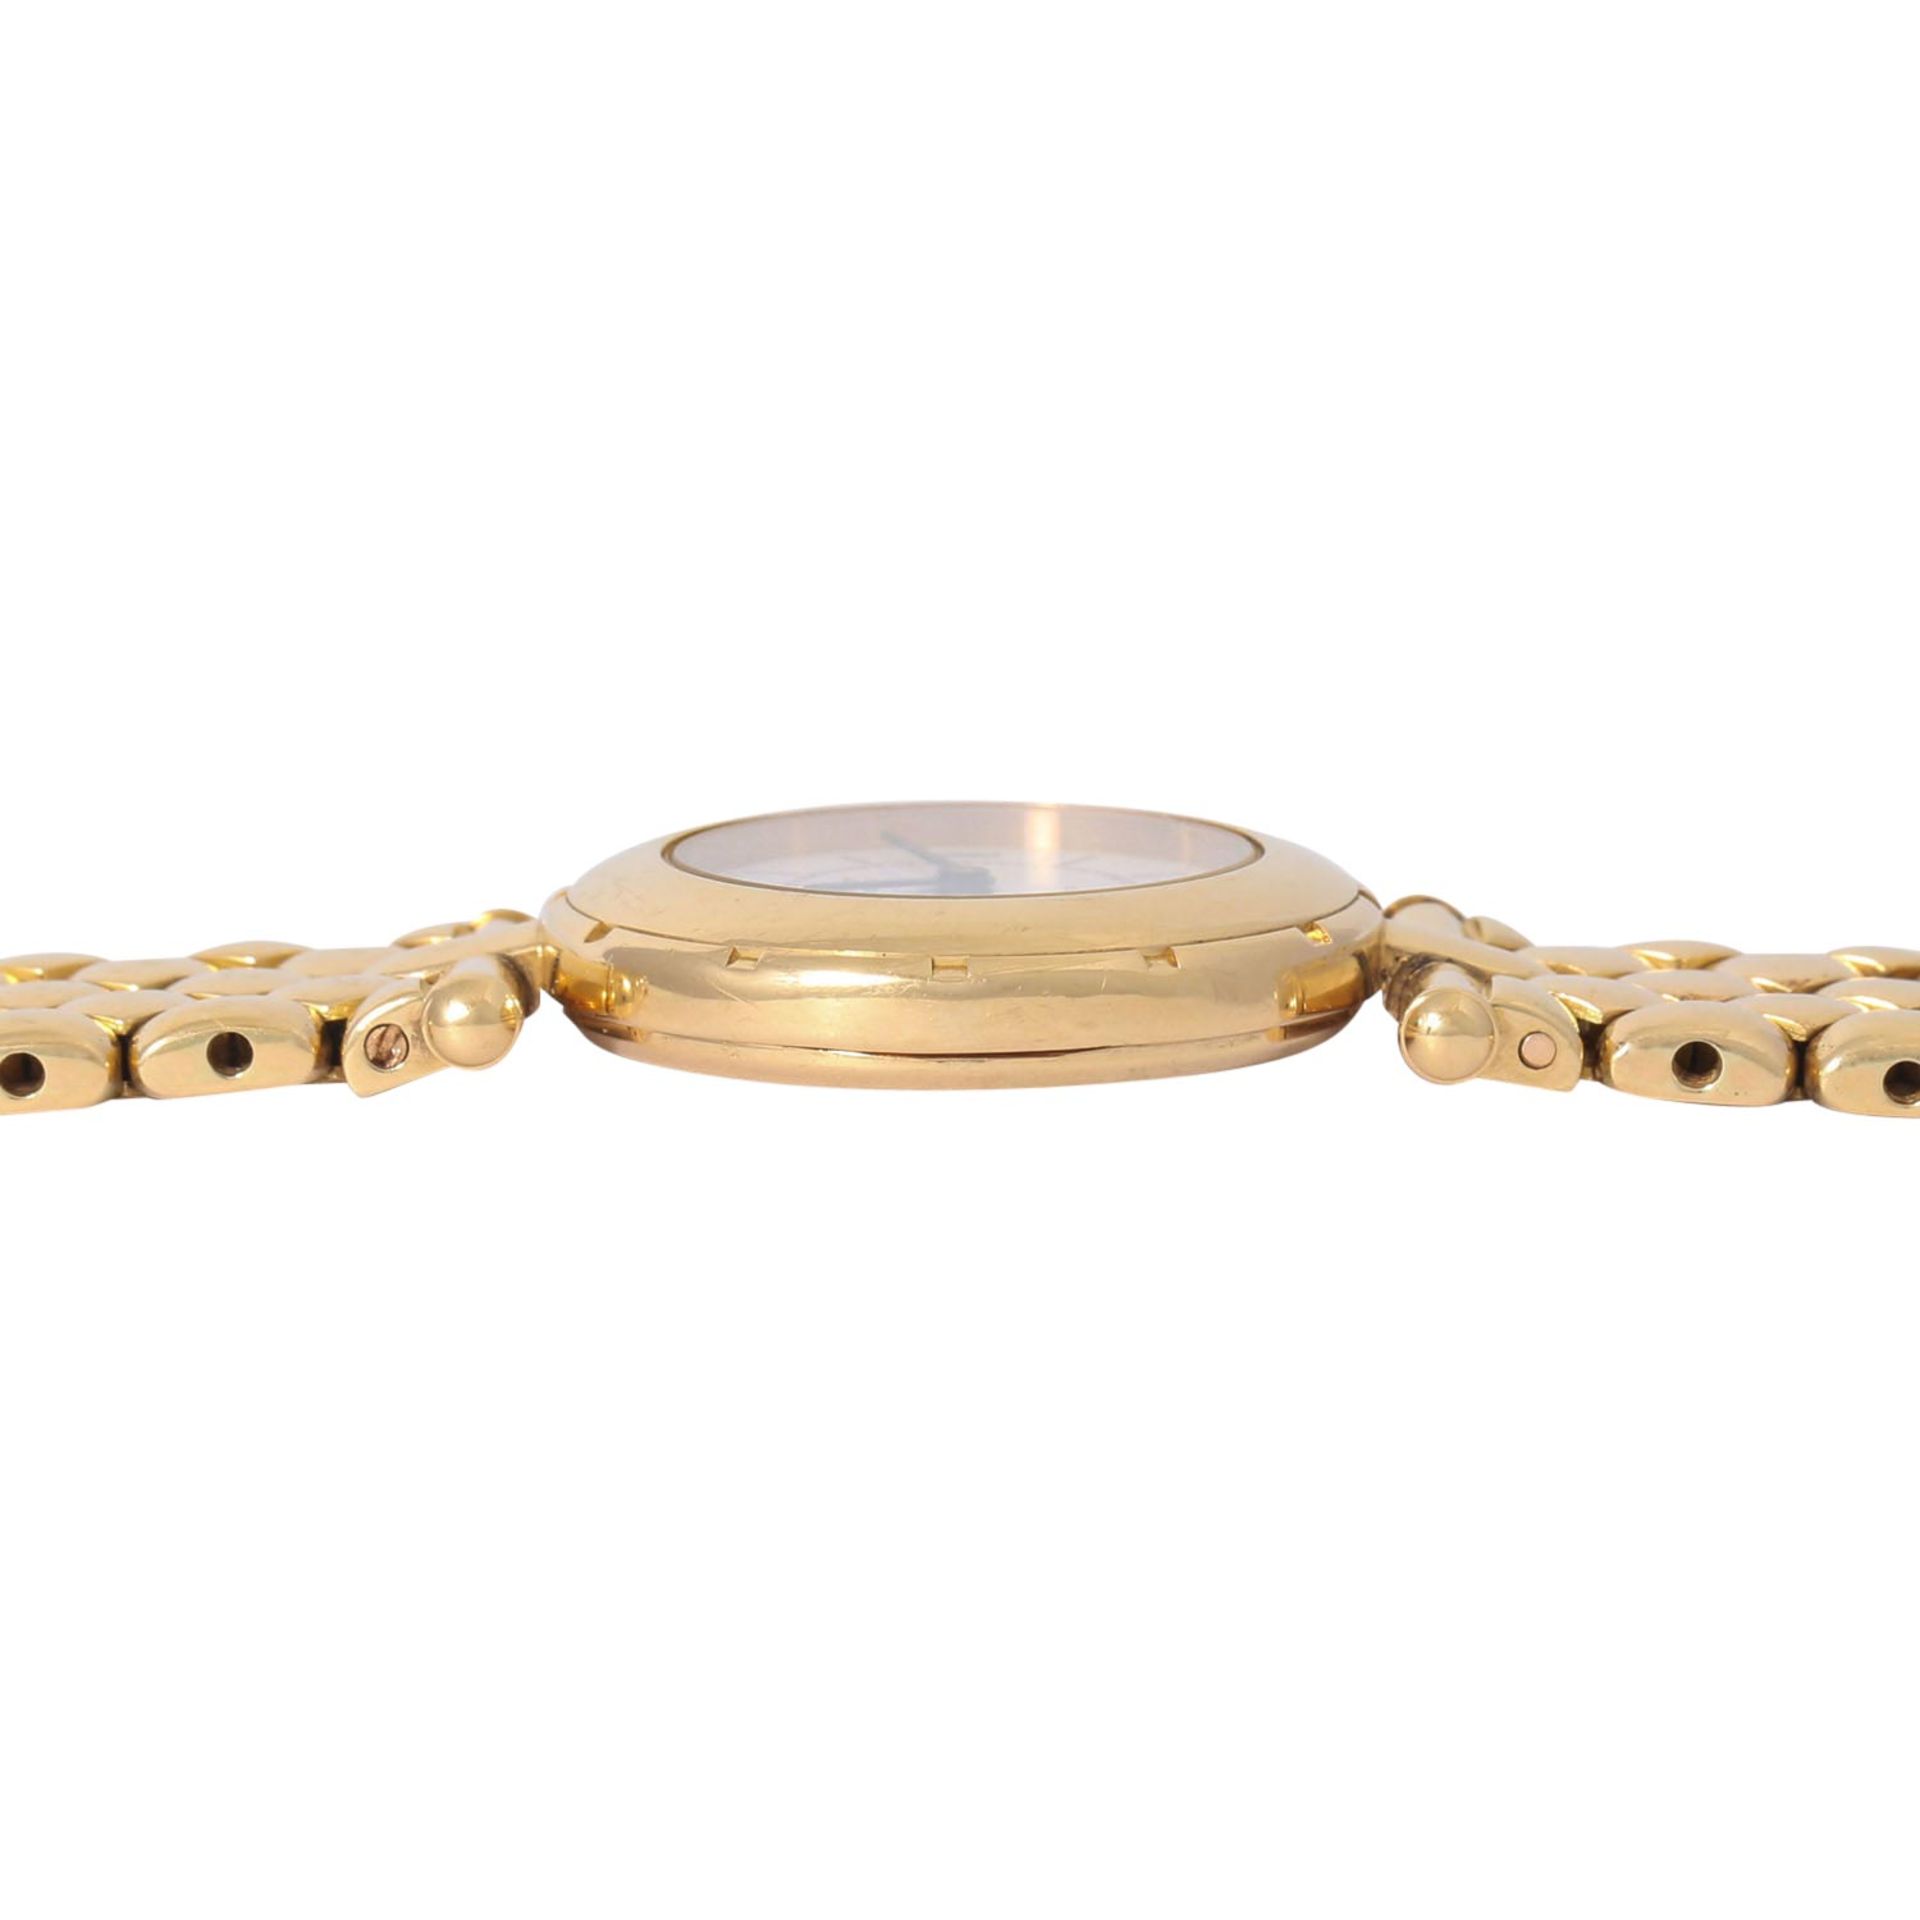 VAN CLEEF & ARPELS hochfeine Damen Armbanduhr, Ref. 13607. Ca. 1990er Jahre. - Bild 4 aus 8